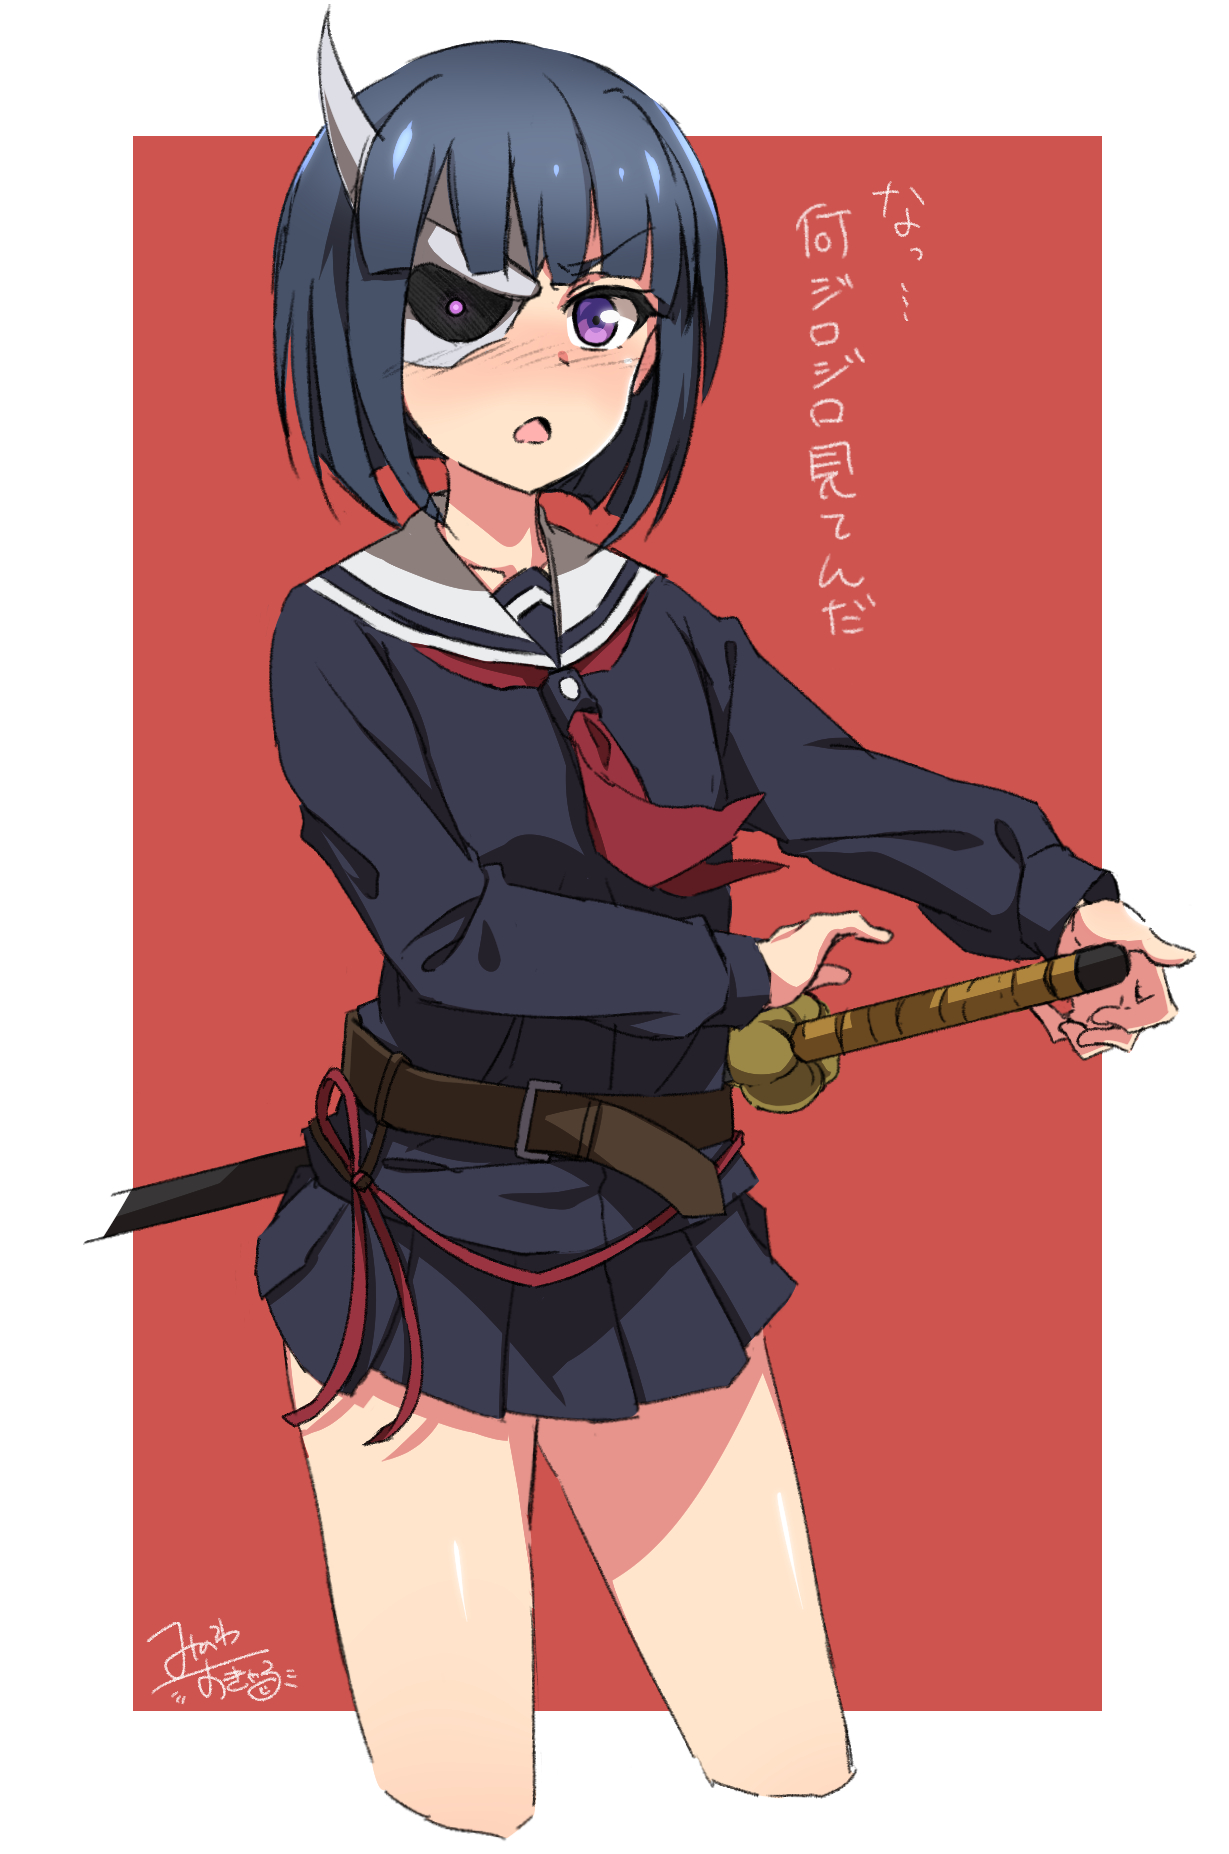 Anime Armed Girl's Machiavellism Art